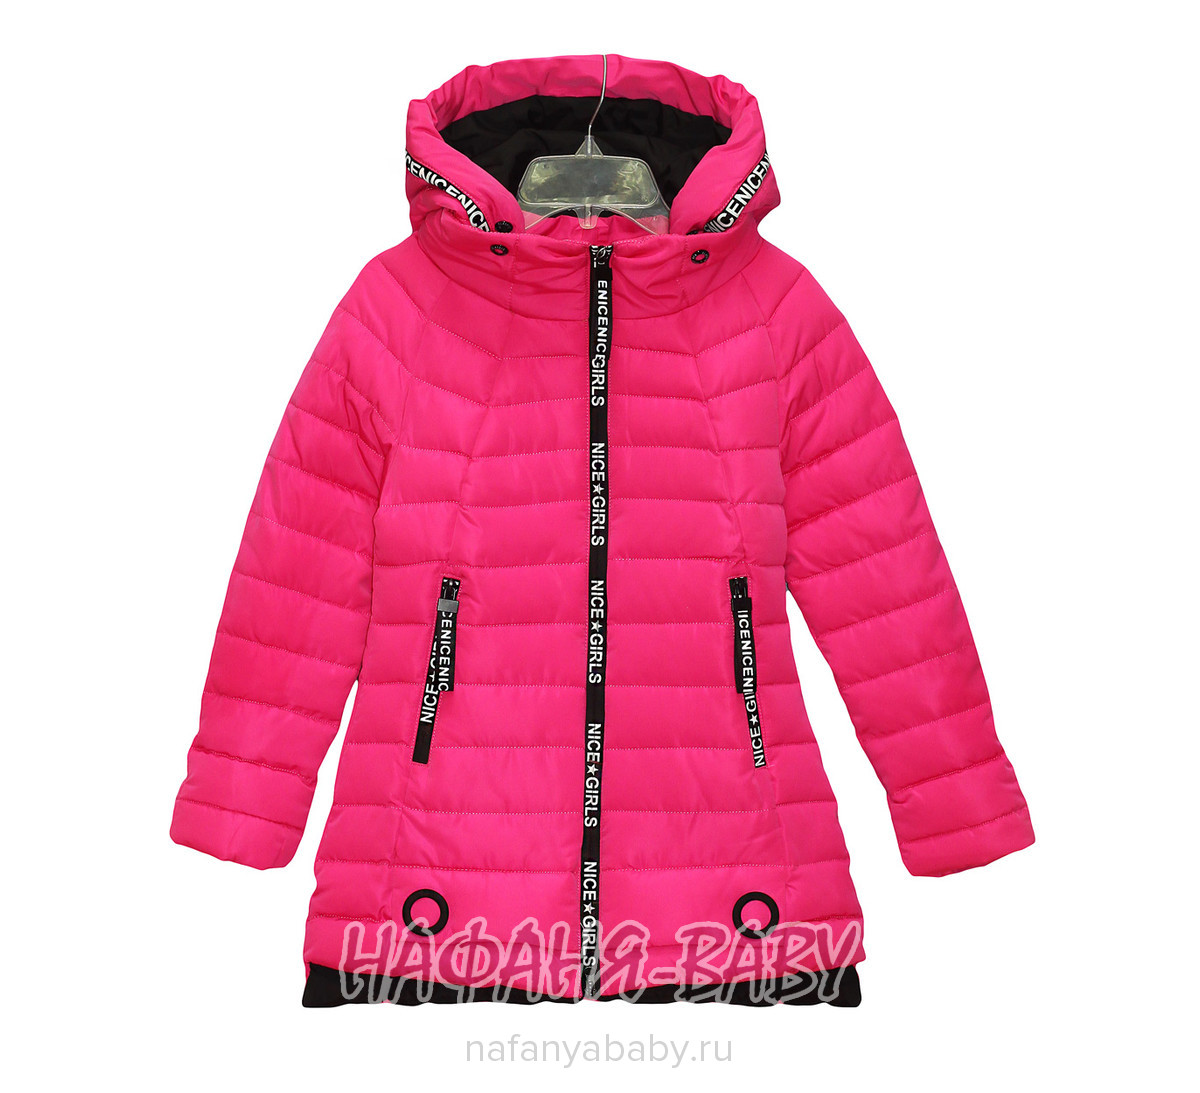 Детская демисезонная куртка SNOW GIRL, купить в интернет магазине Нафаня. арт: 715.